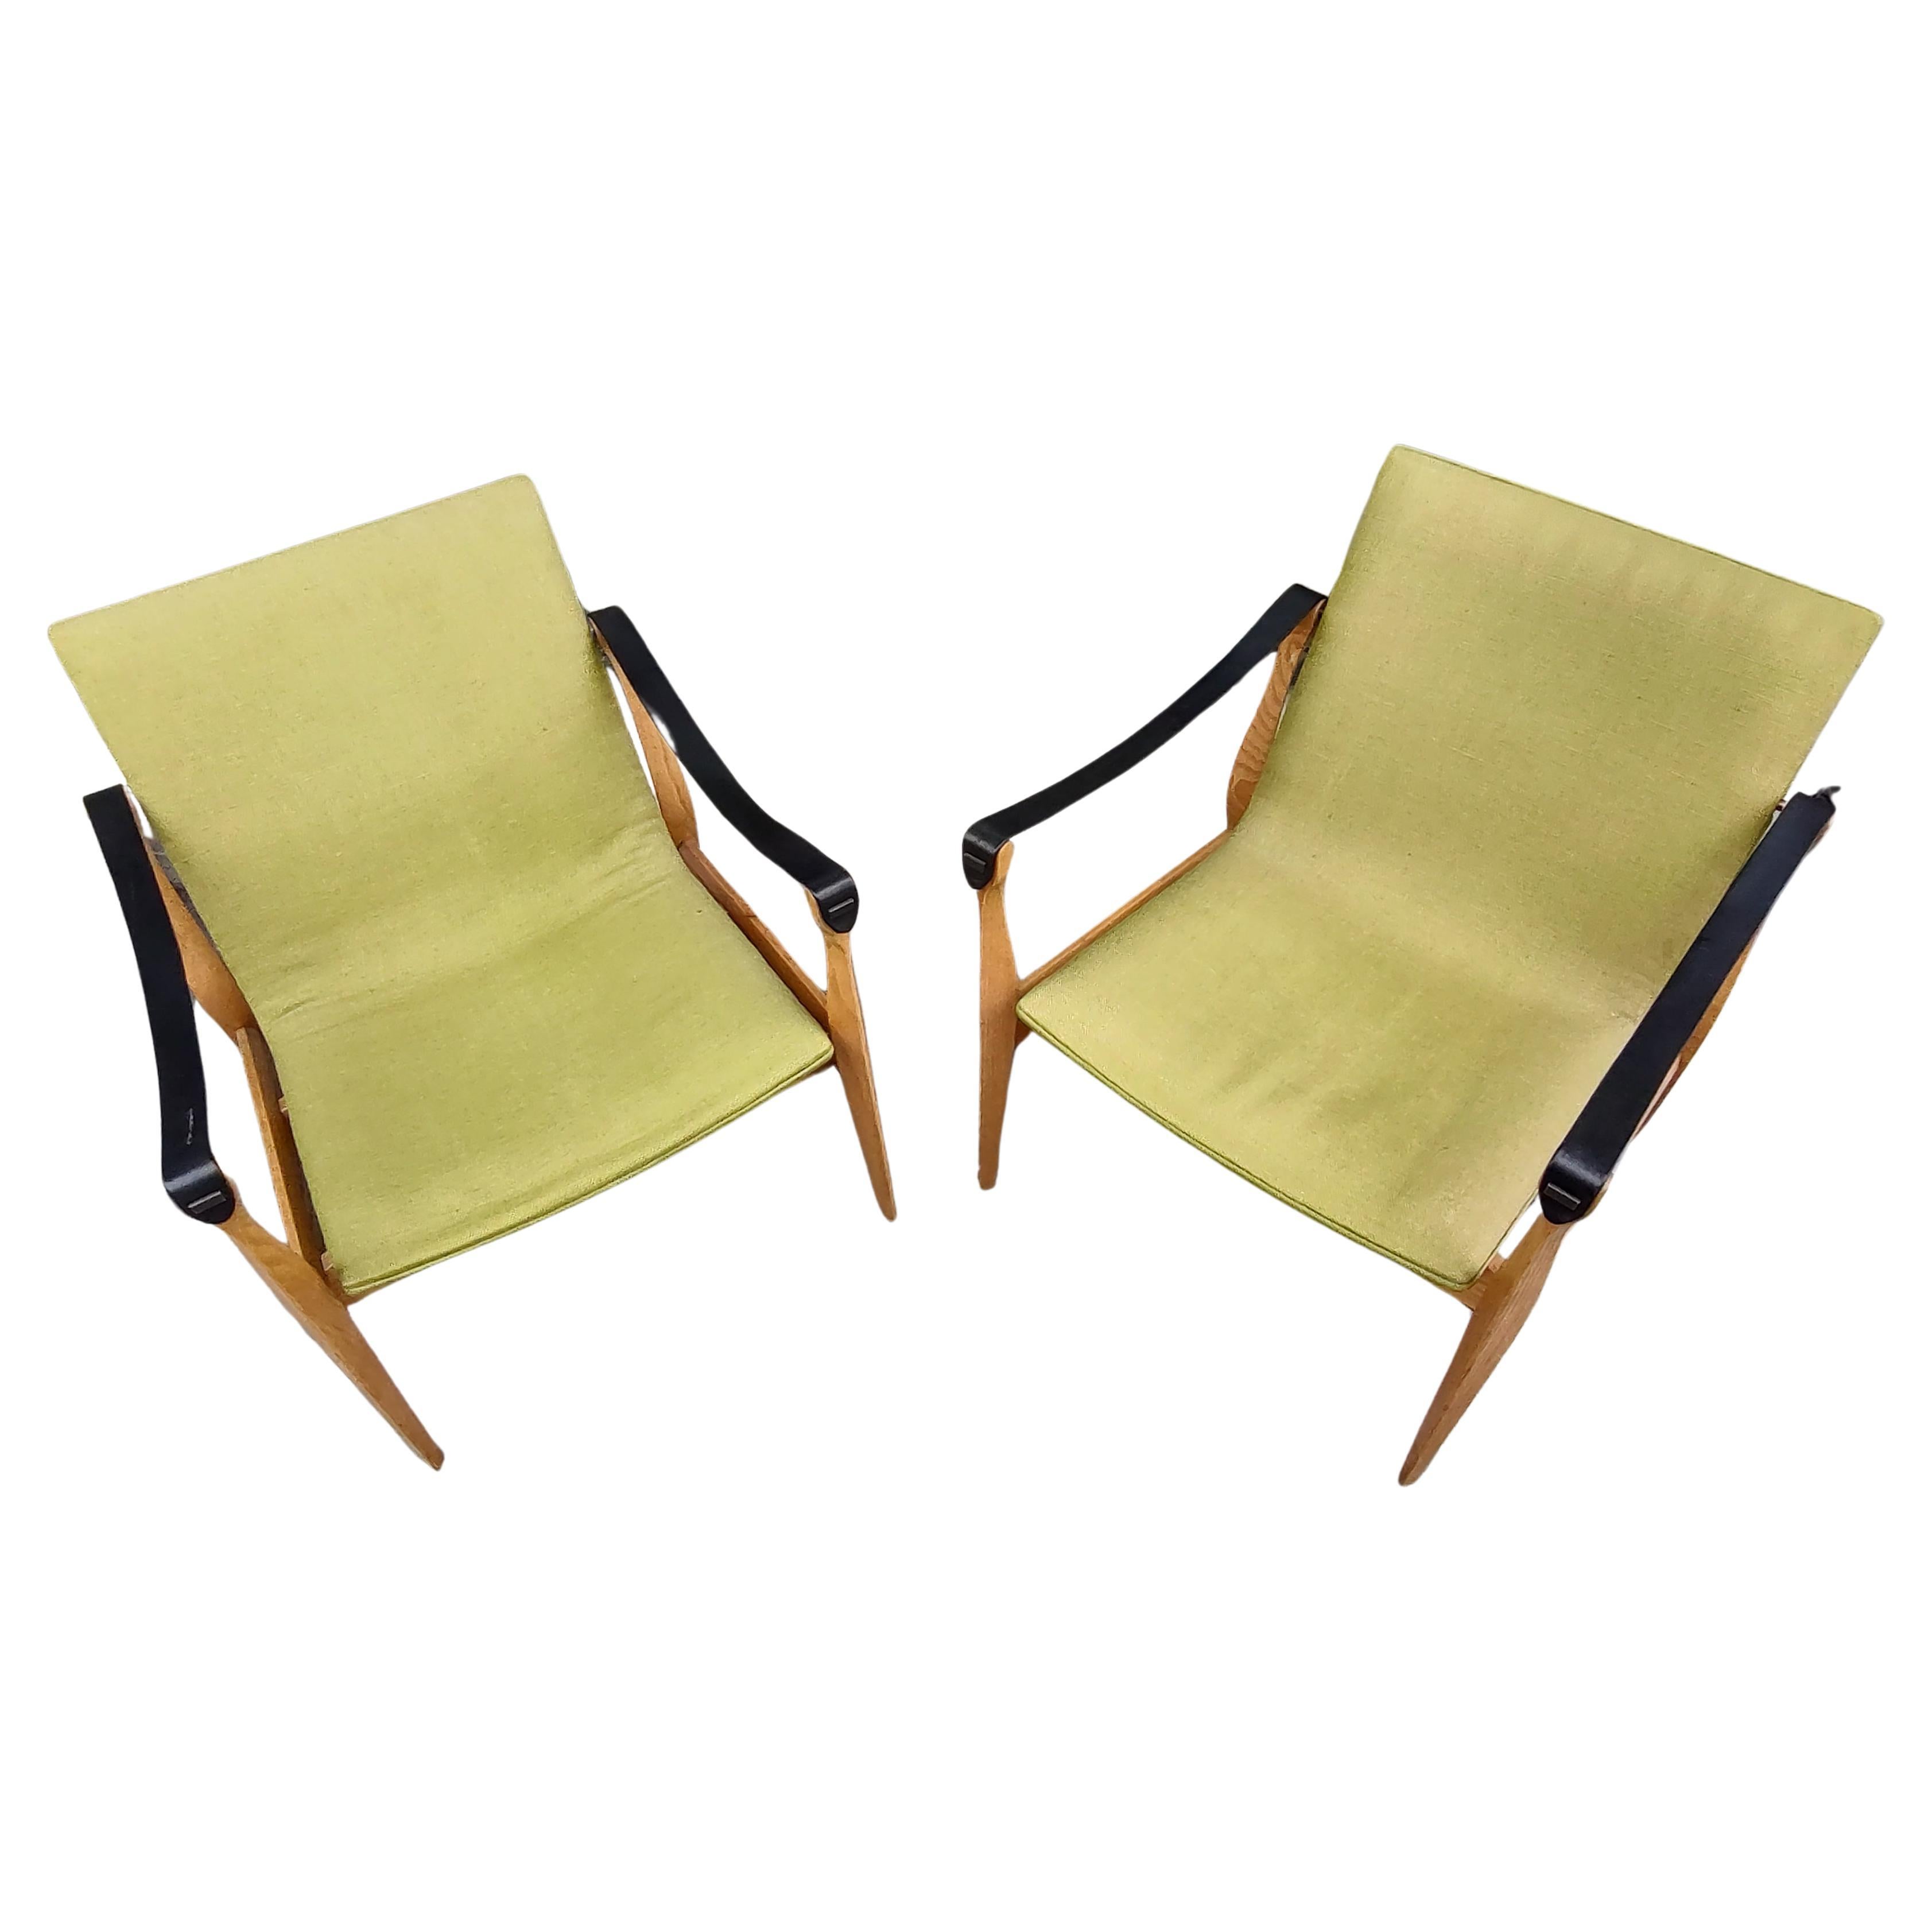 Brass Pair of Mid-Century Modern Safari Chairs by Karen & Ebbe Clemmensen 4 Hansen For Sale